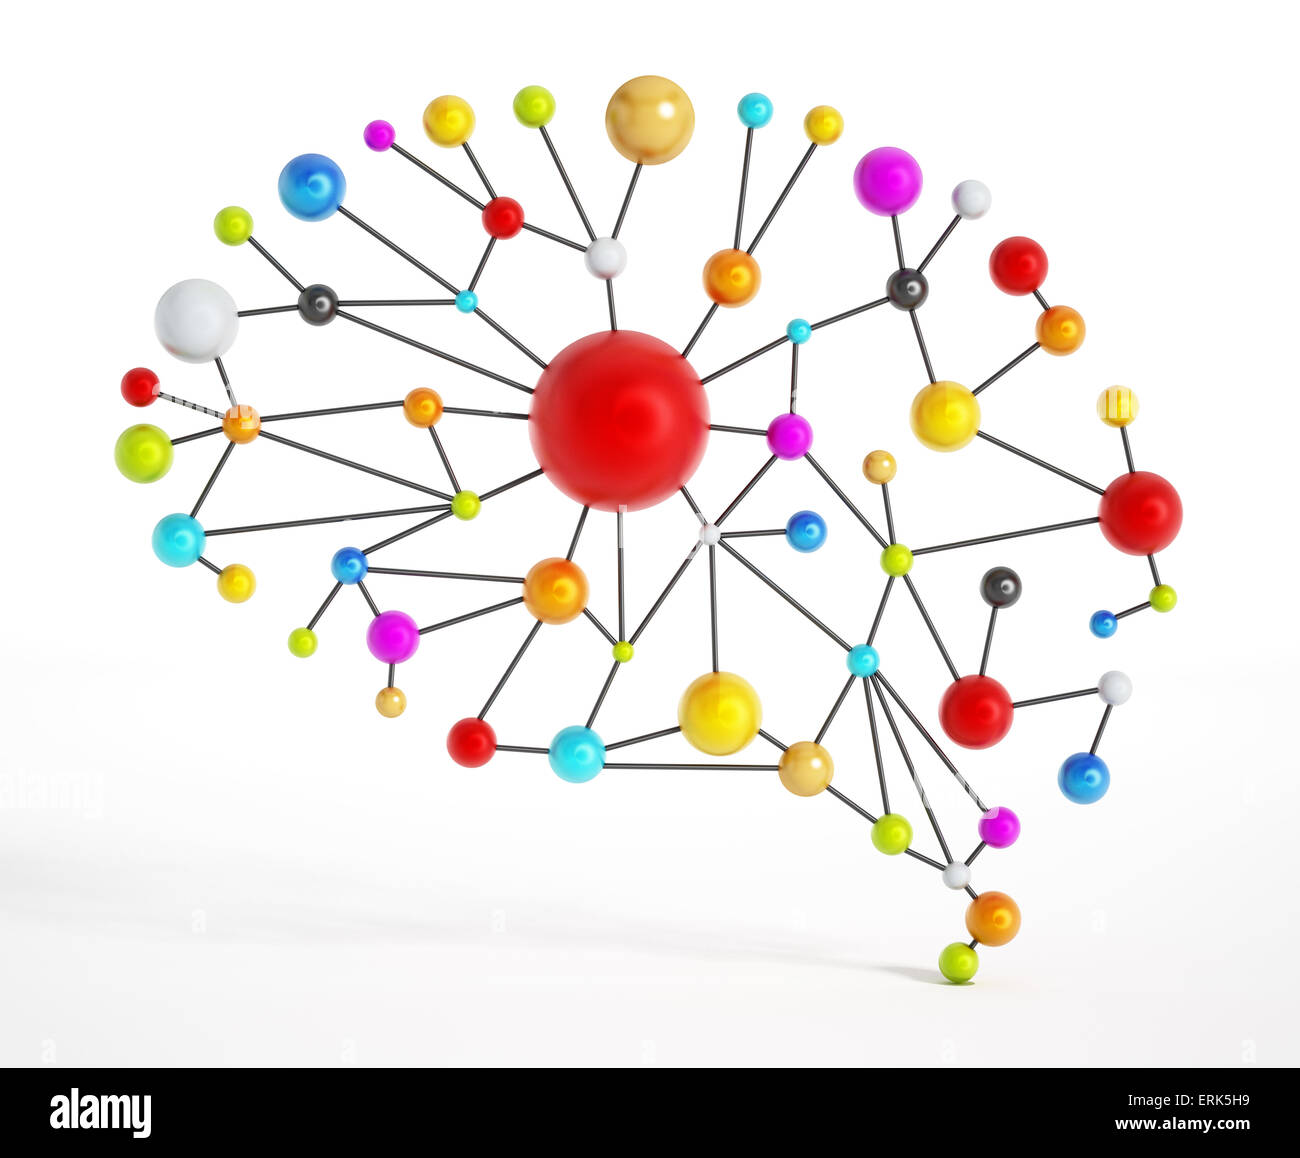 Gehirn-Netzwerk mit bunten verbundenen Punkten. Stockfoto